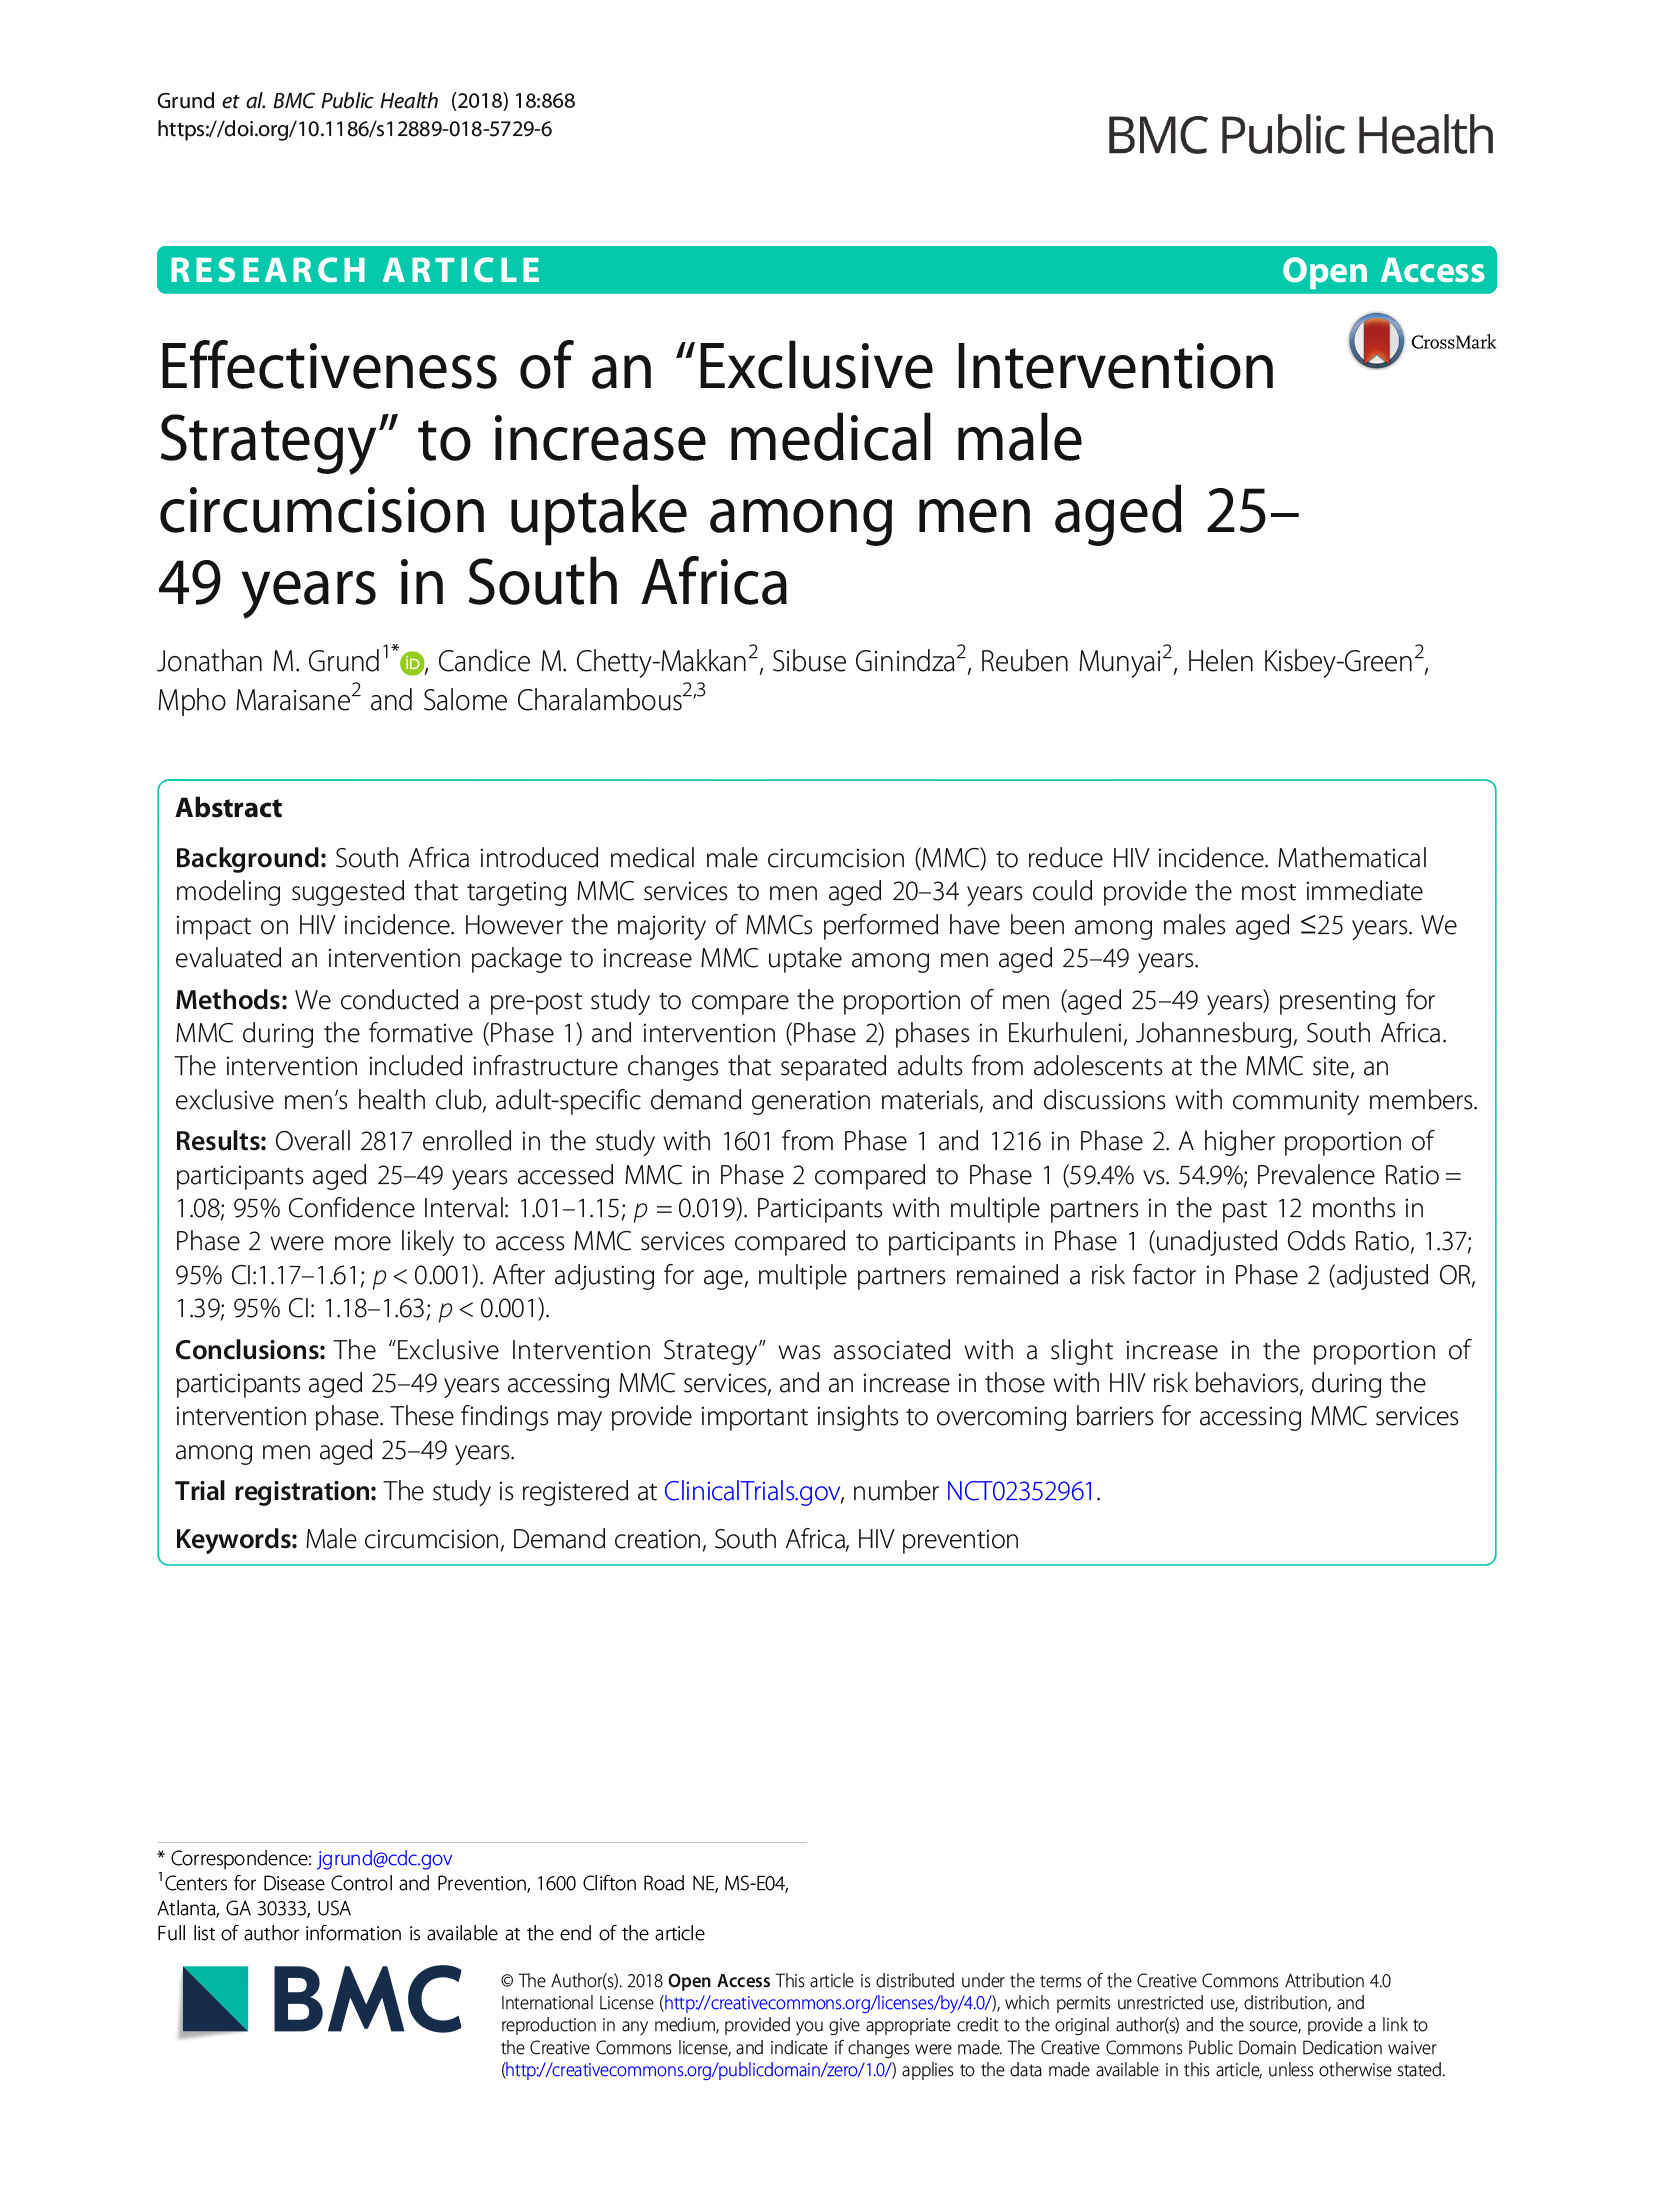 Eficácia de uma "estratégia de intervenção exclusiva" para aumentar a adesão à circuncisão médica masculina entre homens com idades compreendidas entre os 25 e os 49 anos na África do Sul - capa